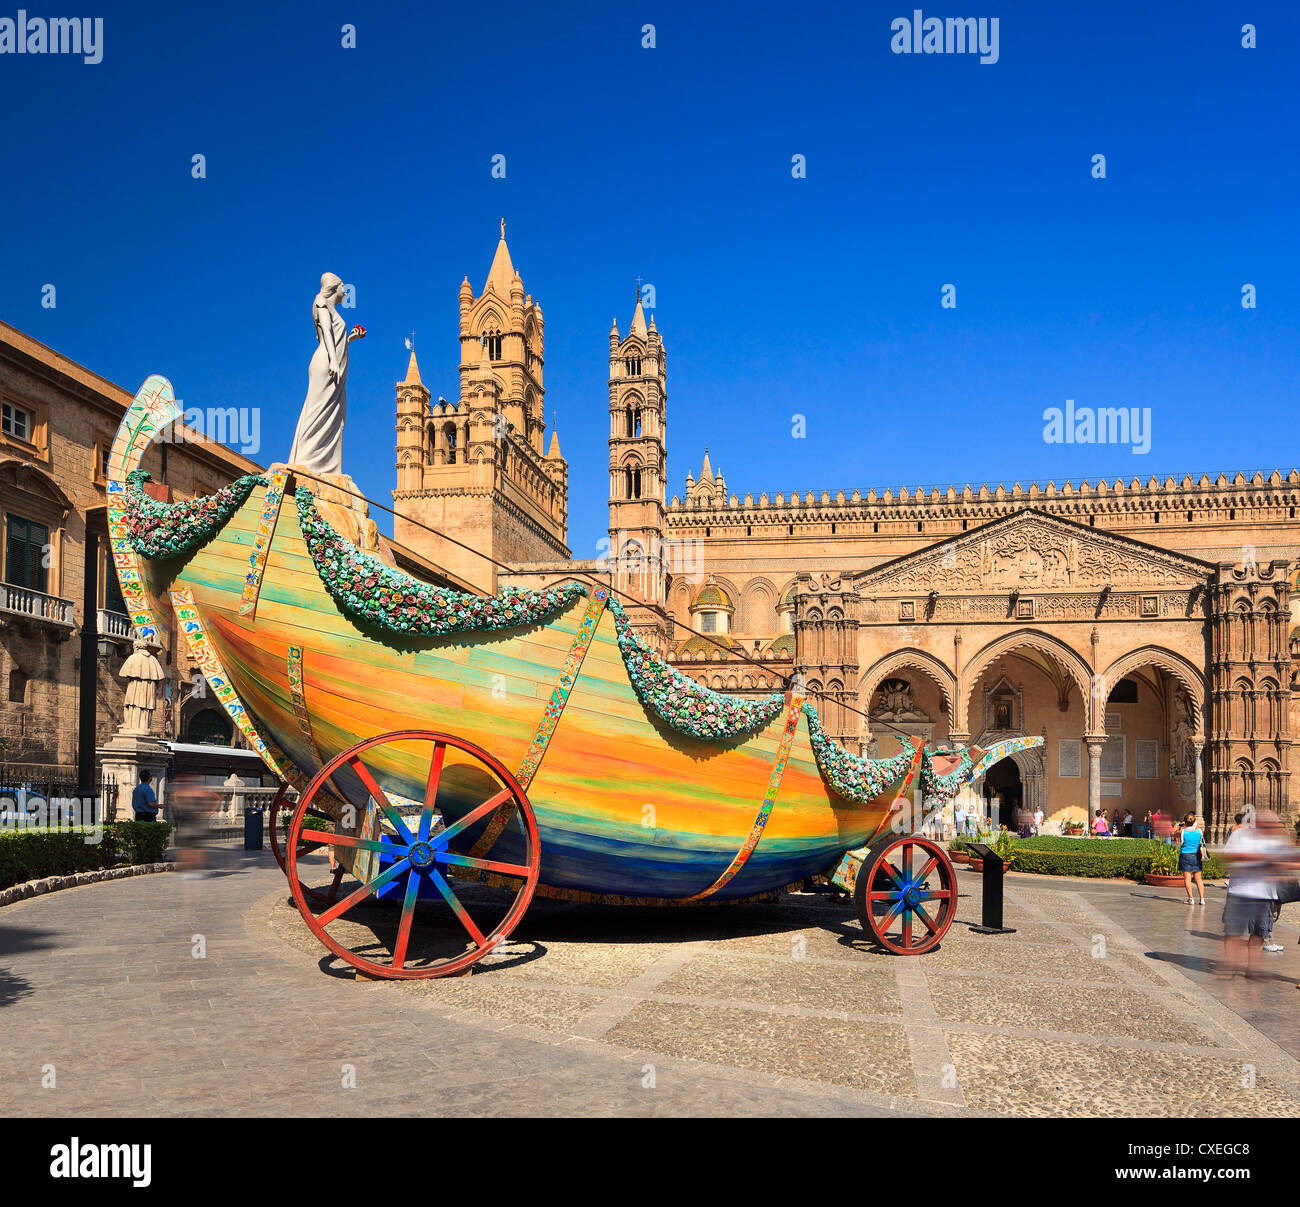 El coche de festino festival folclórico en la plaza de la catedral y antecedentes Foto de stock